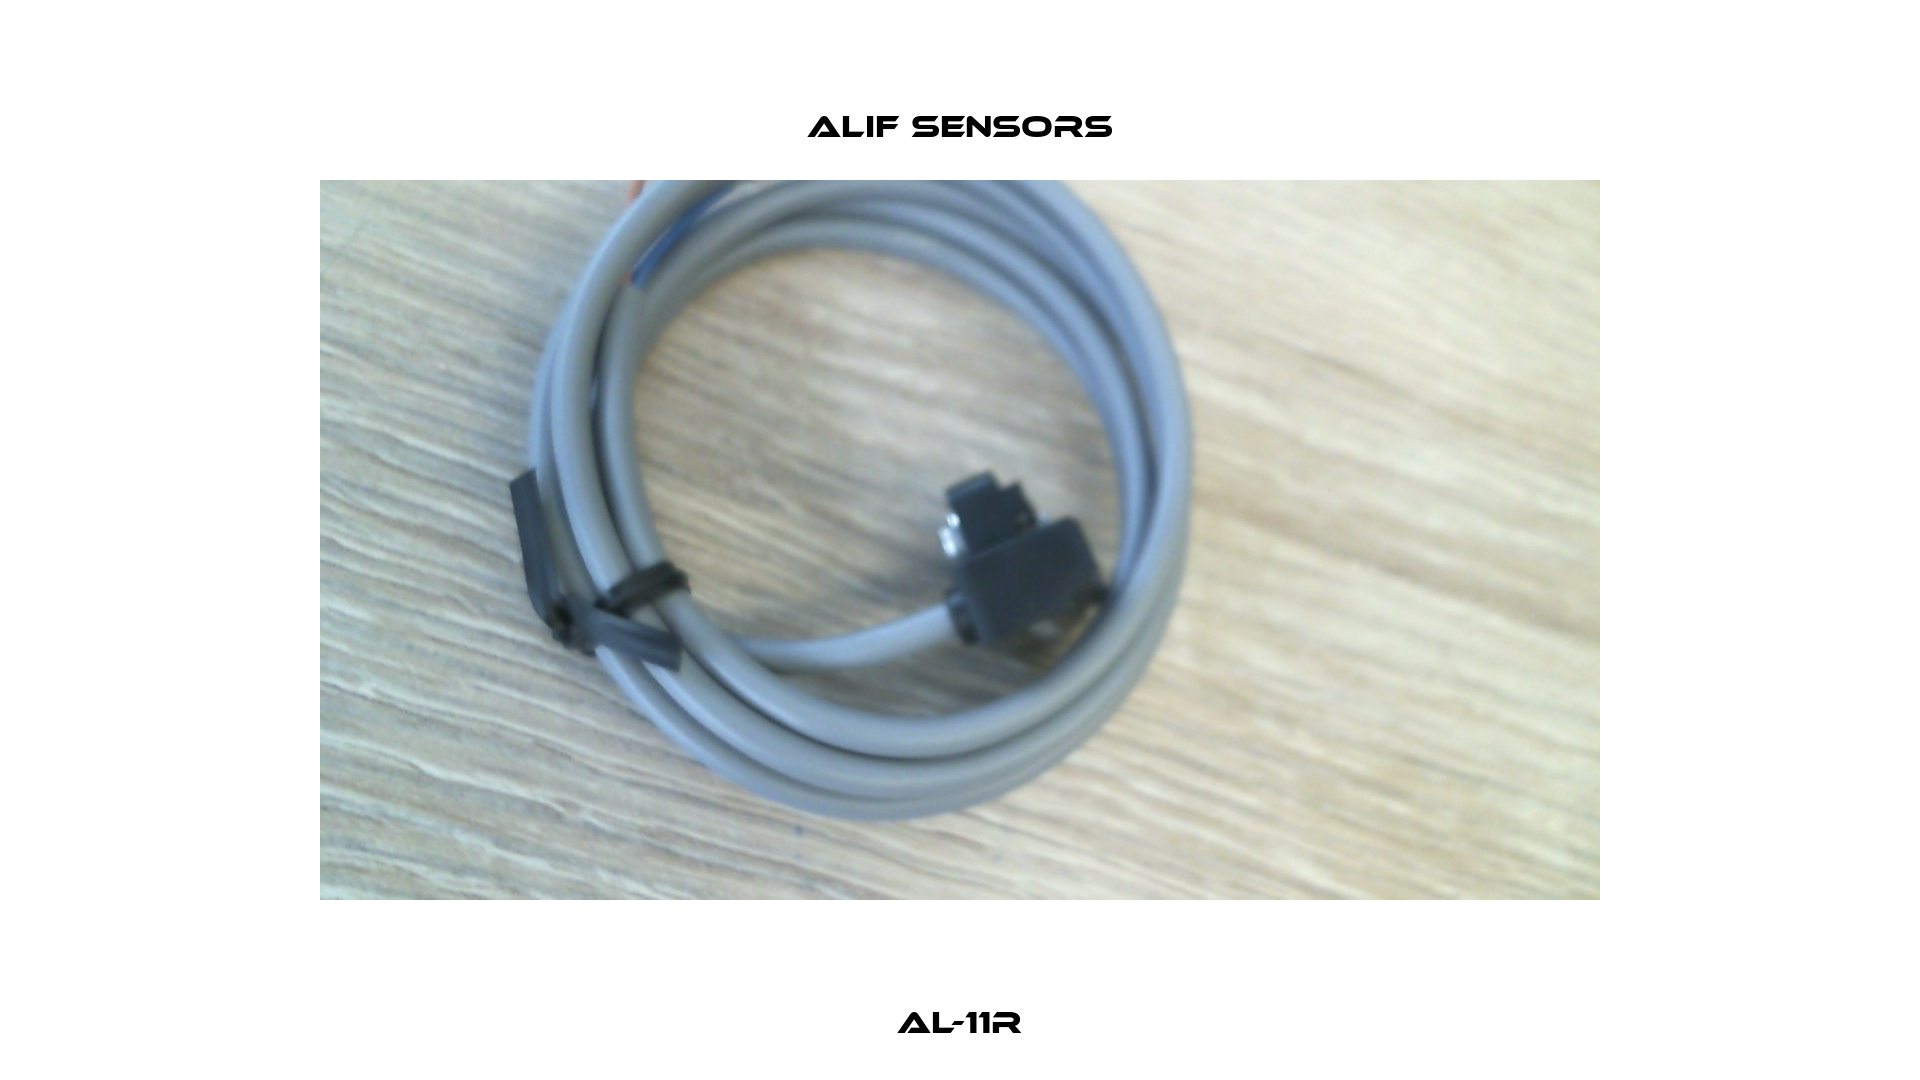 AL-11R Alif Sensors